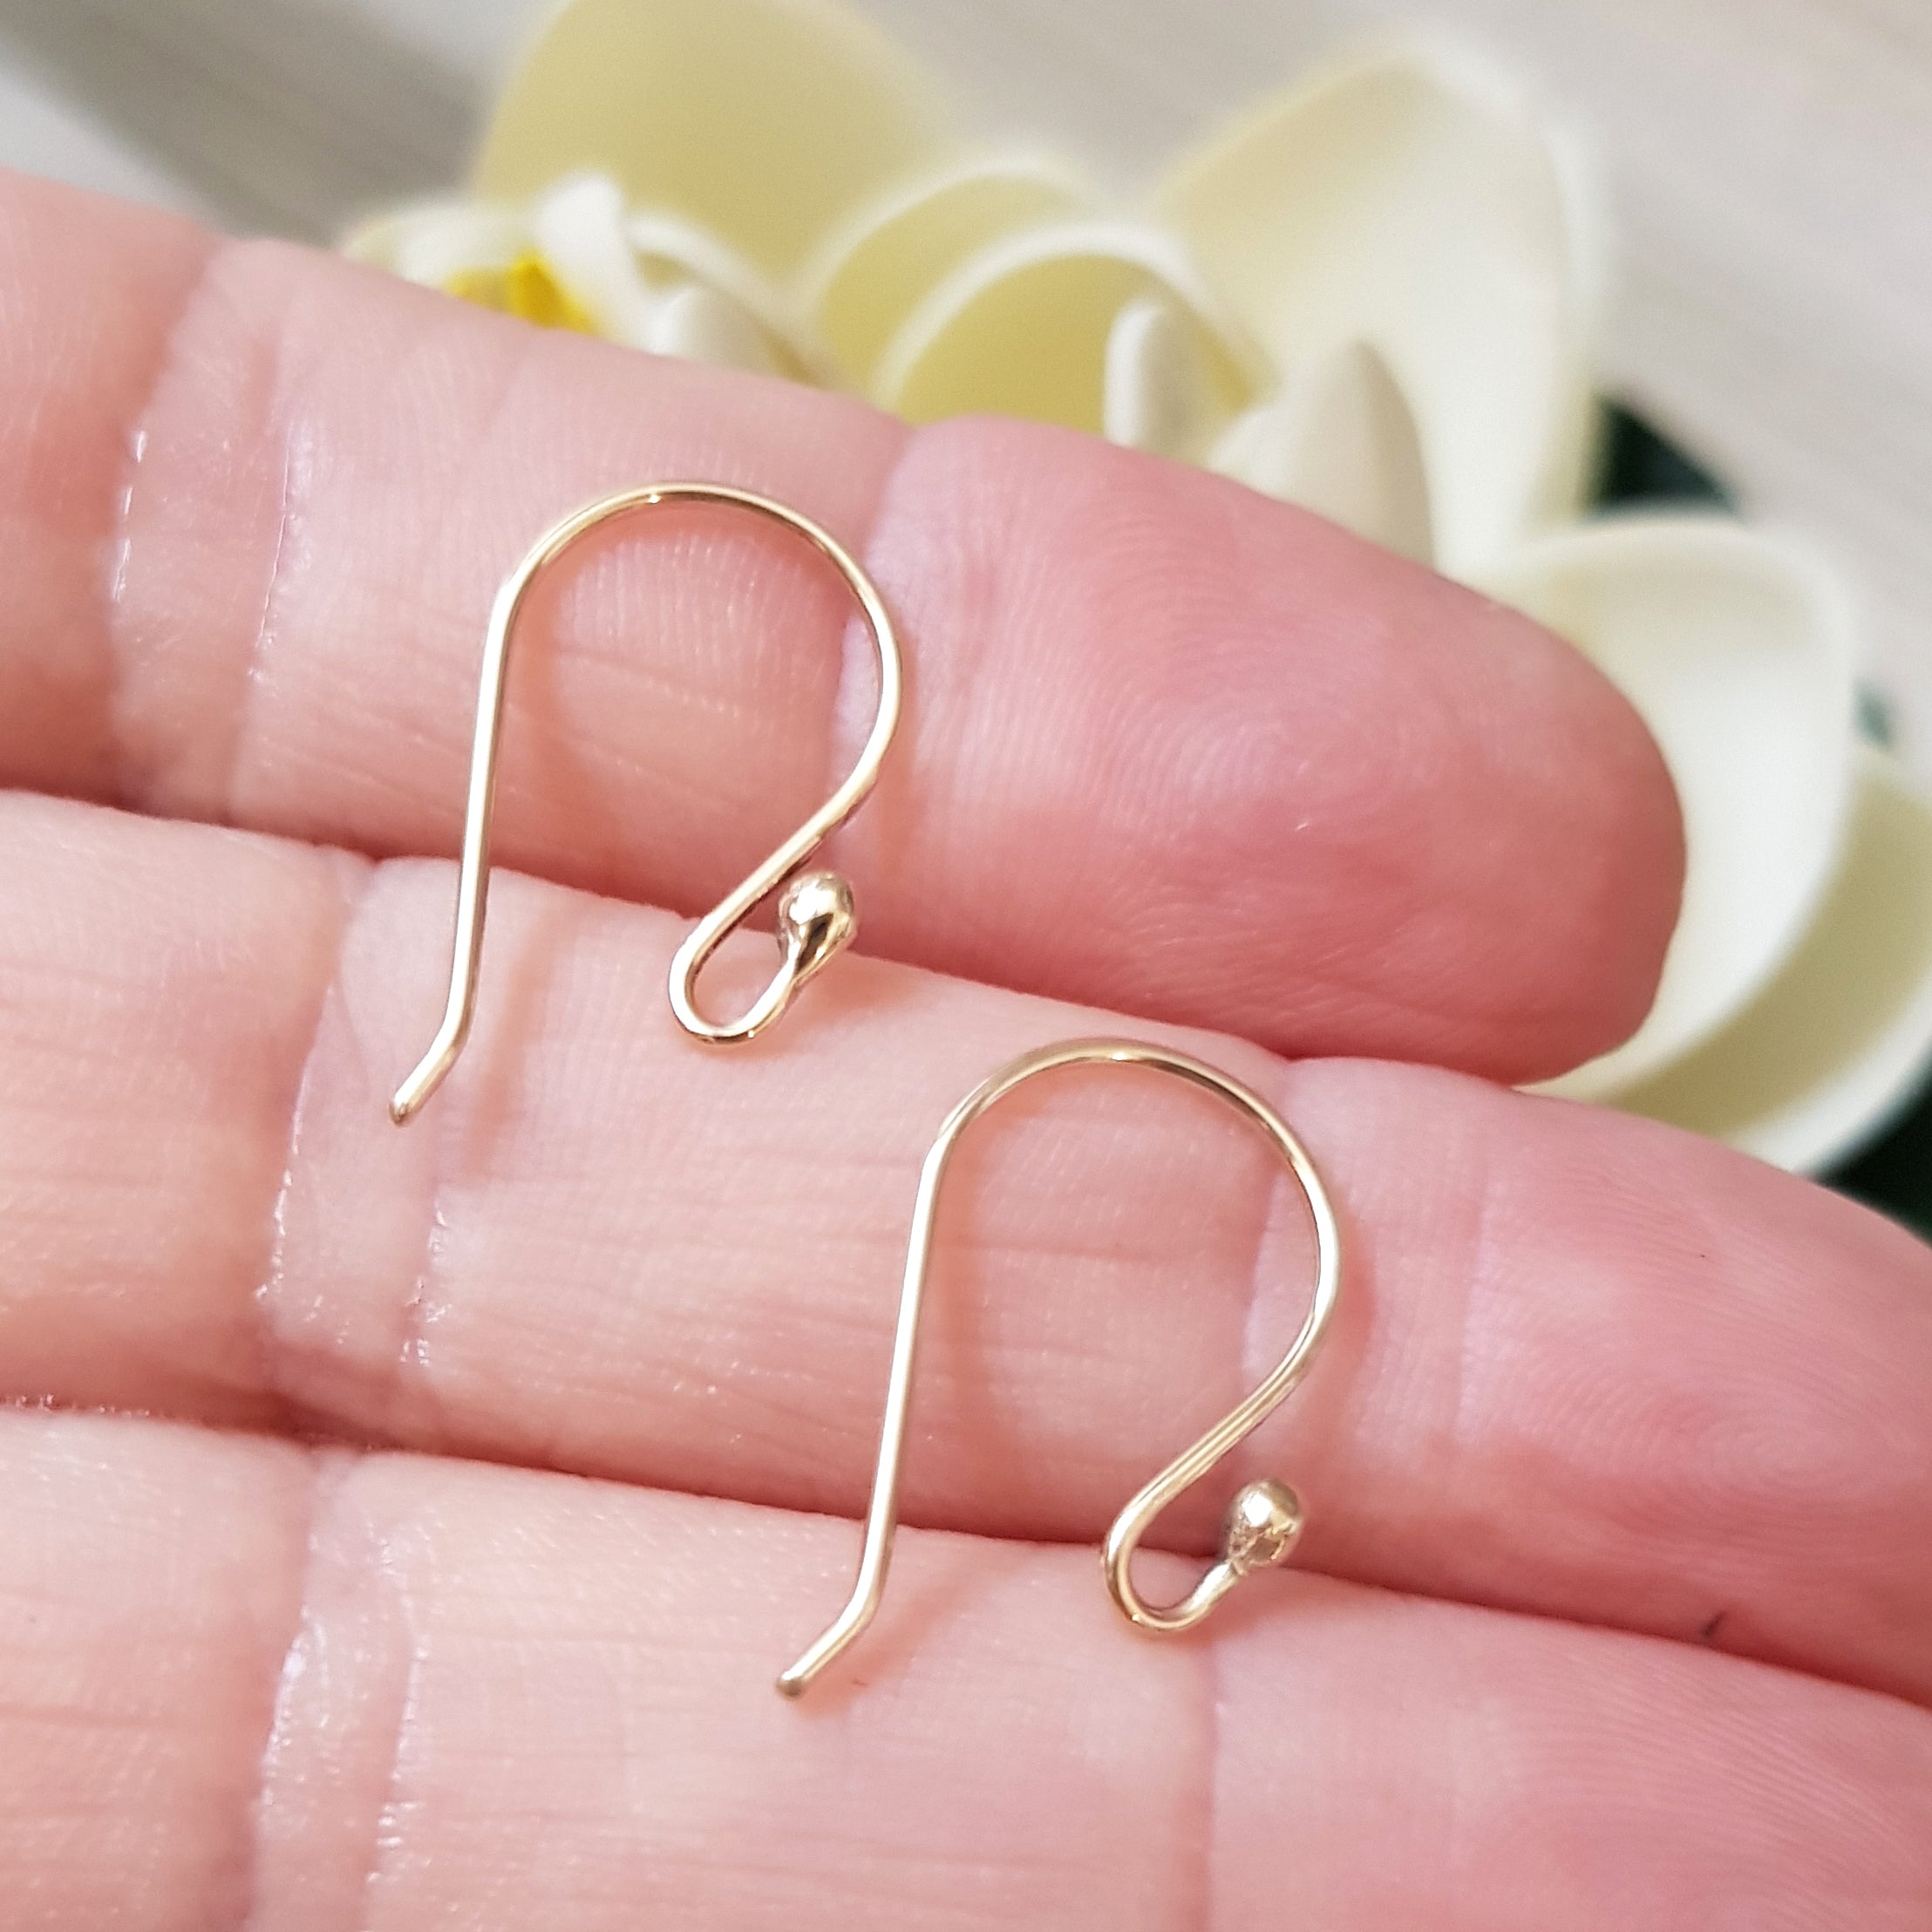 White Marble Earrings Findings, 1 Pair, Acetate Acrylic Hoop Findings,